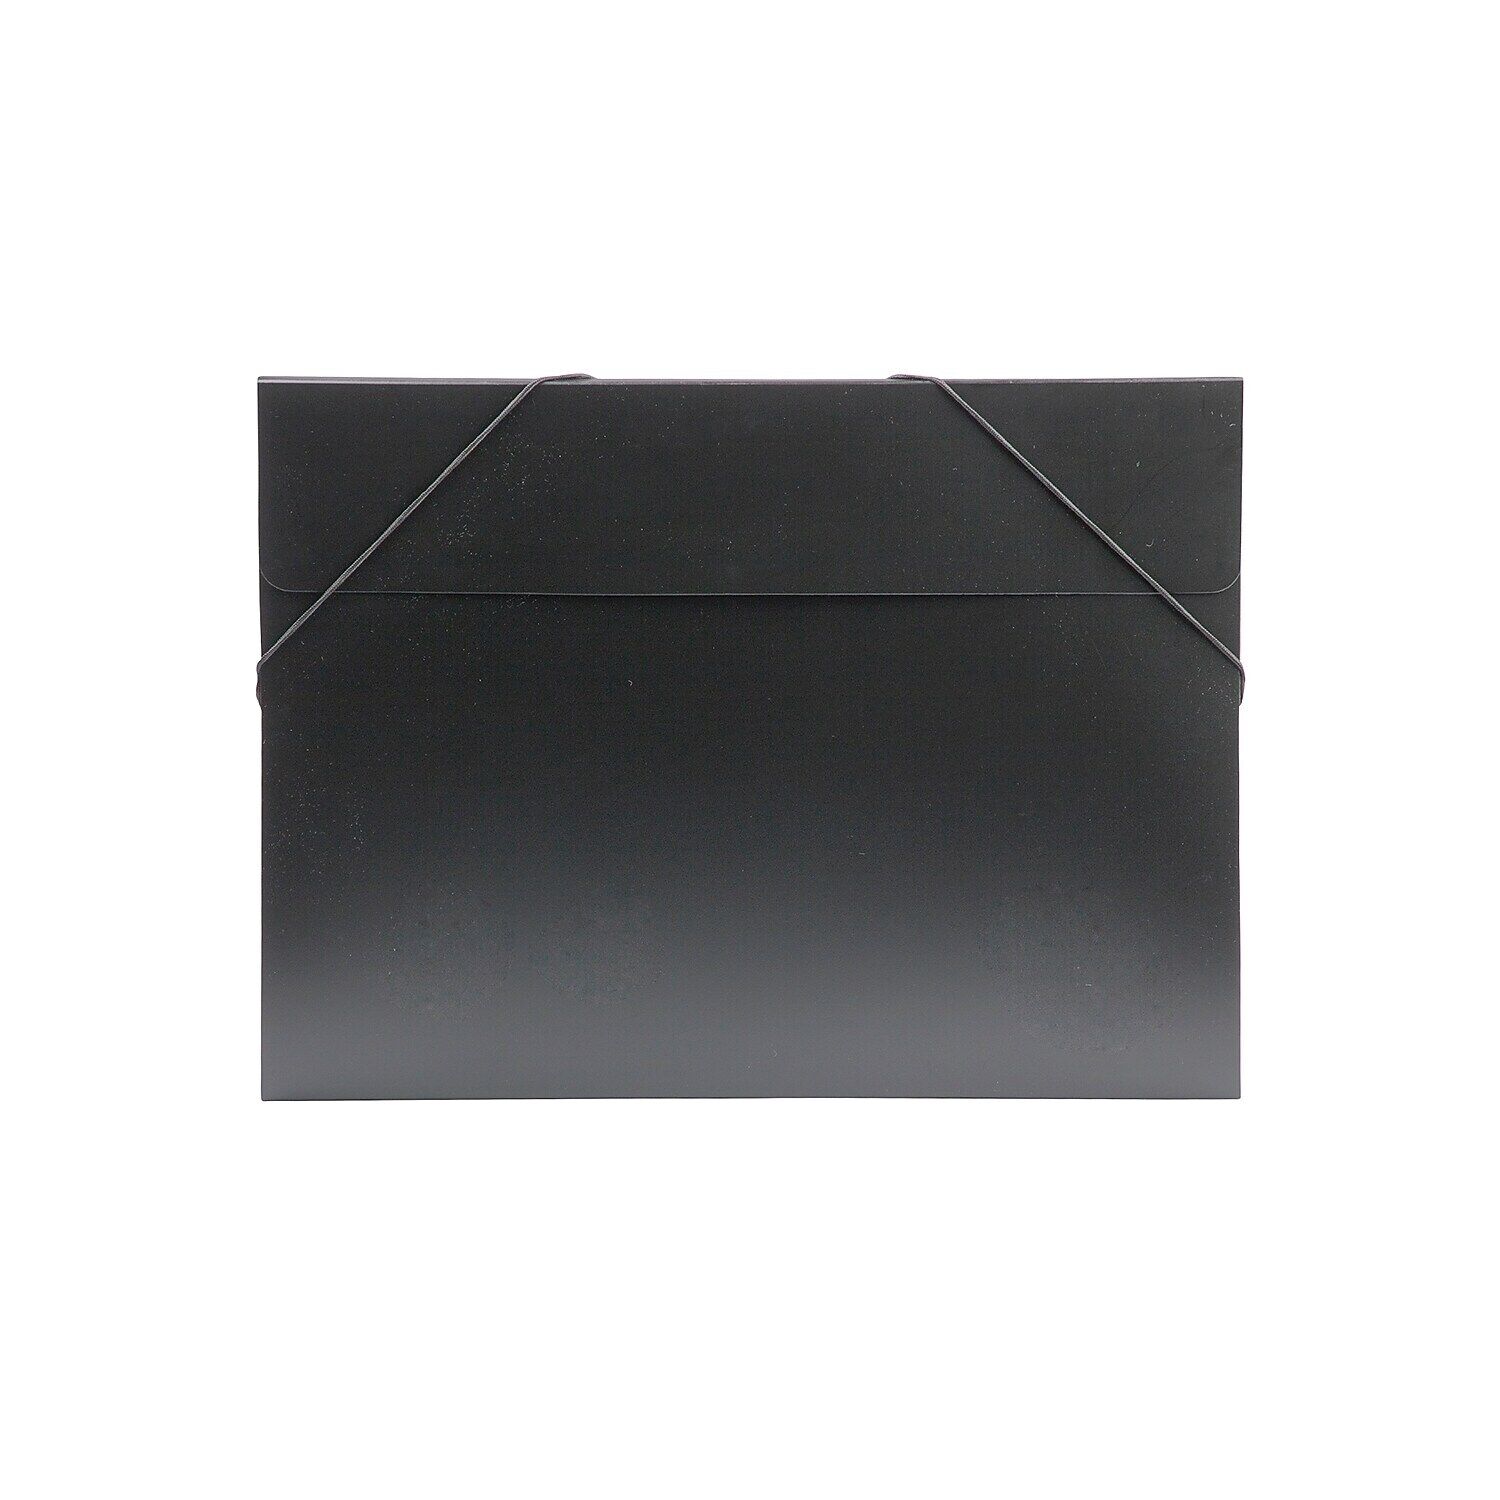 JAM Paper Plastic Portfolio with Elastic Closure Large 11 x 15 x 1/2 Black Sold